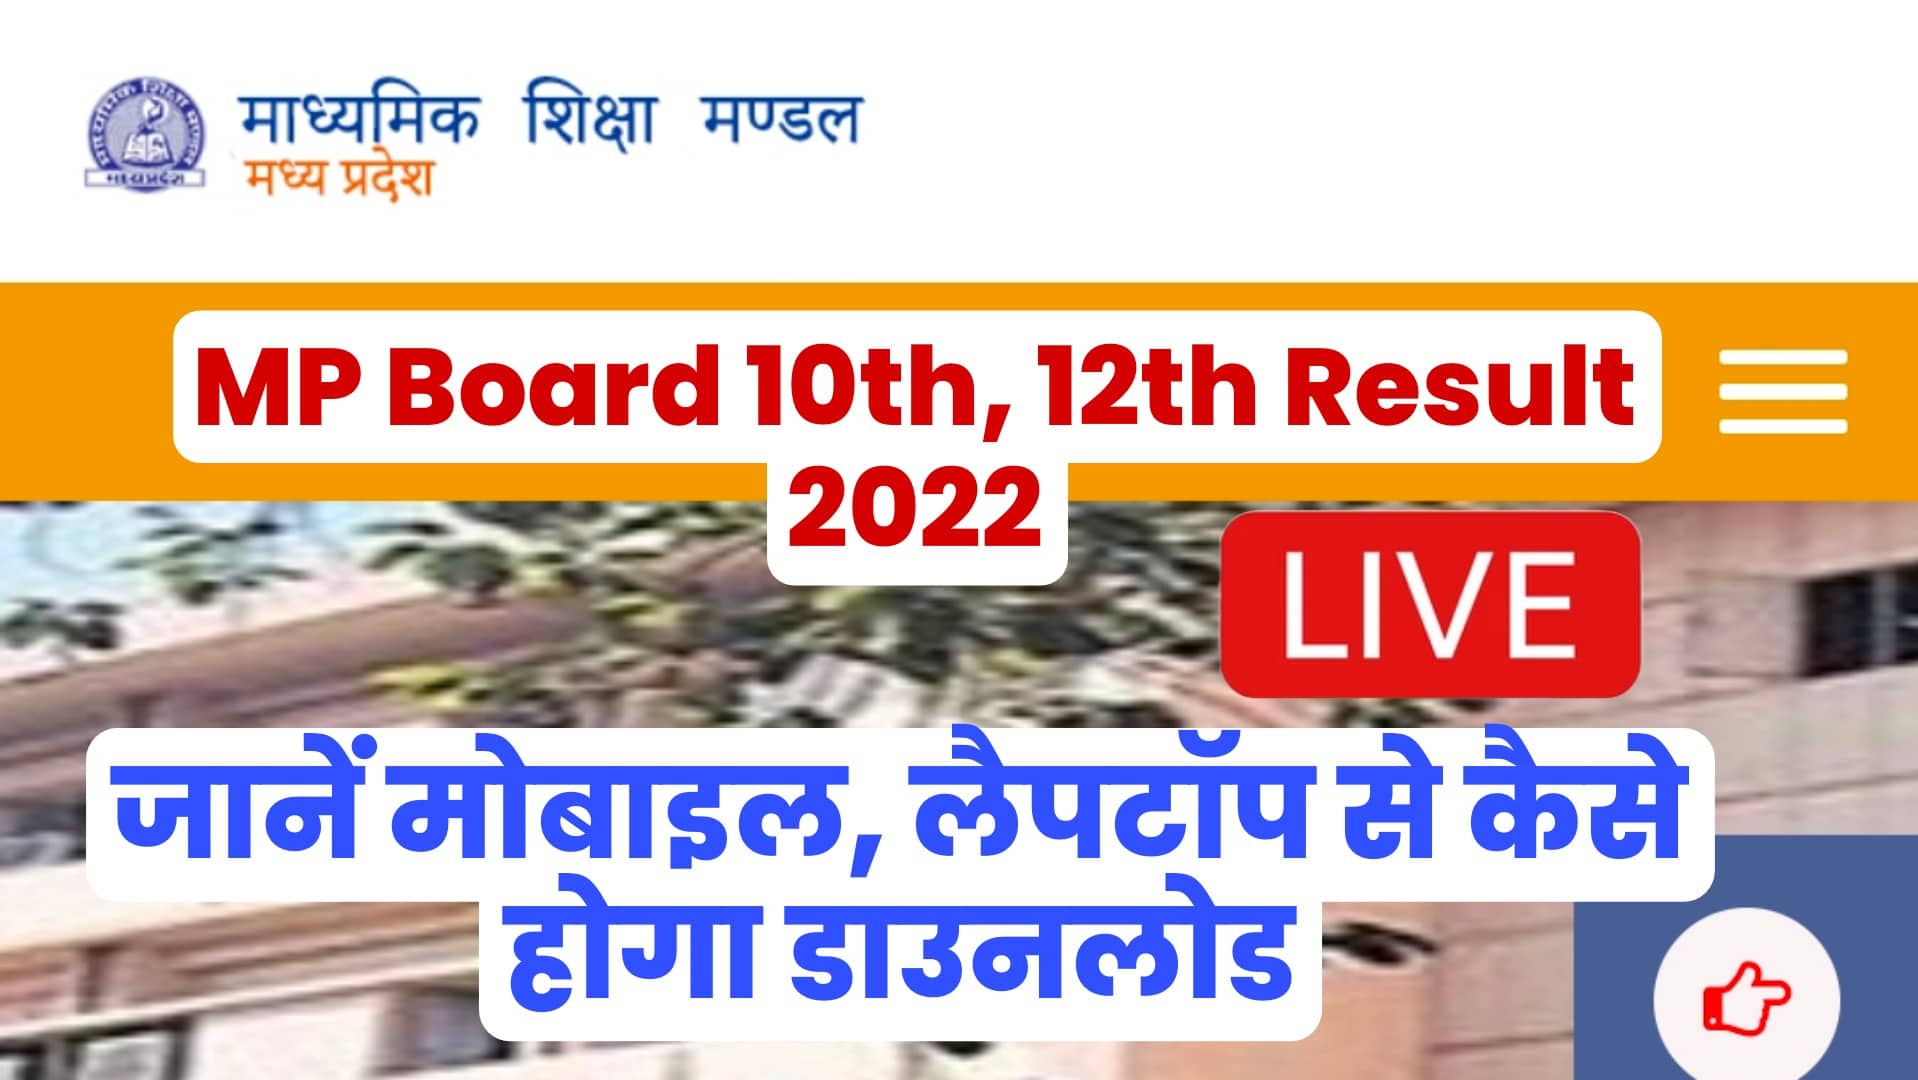 MP Board 10th, 12th Result 2022: मध्यप्रदेश बोर्ड के 10 वीं और 12 वीं का रिजल्ट हुआ जारी, यहाँ से डाउनलोड करें अपनी मार्कशीट/रिजल्ट